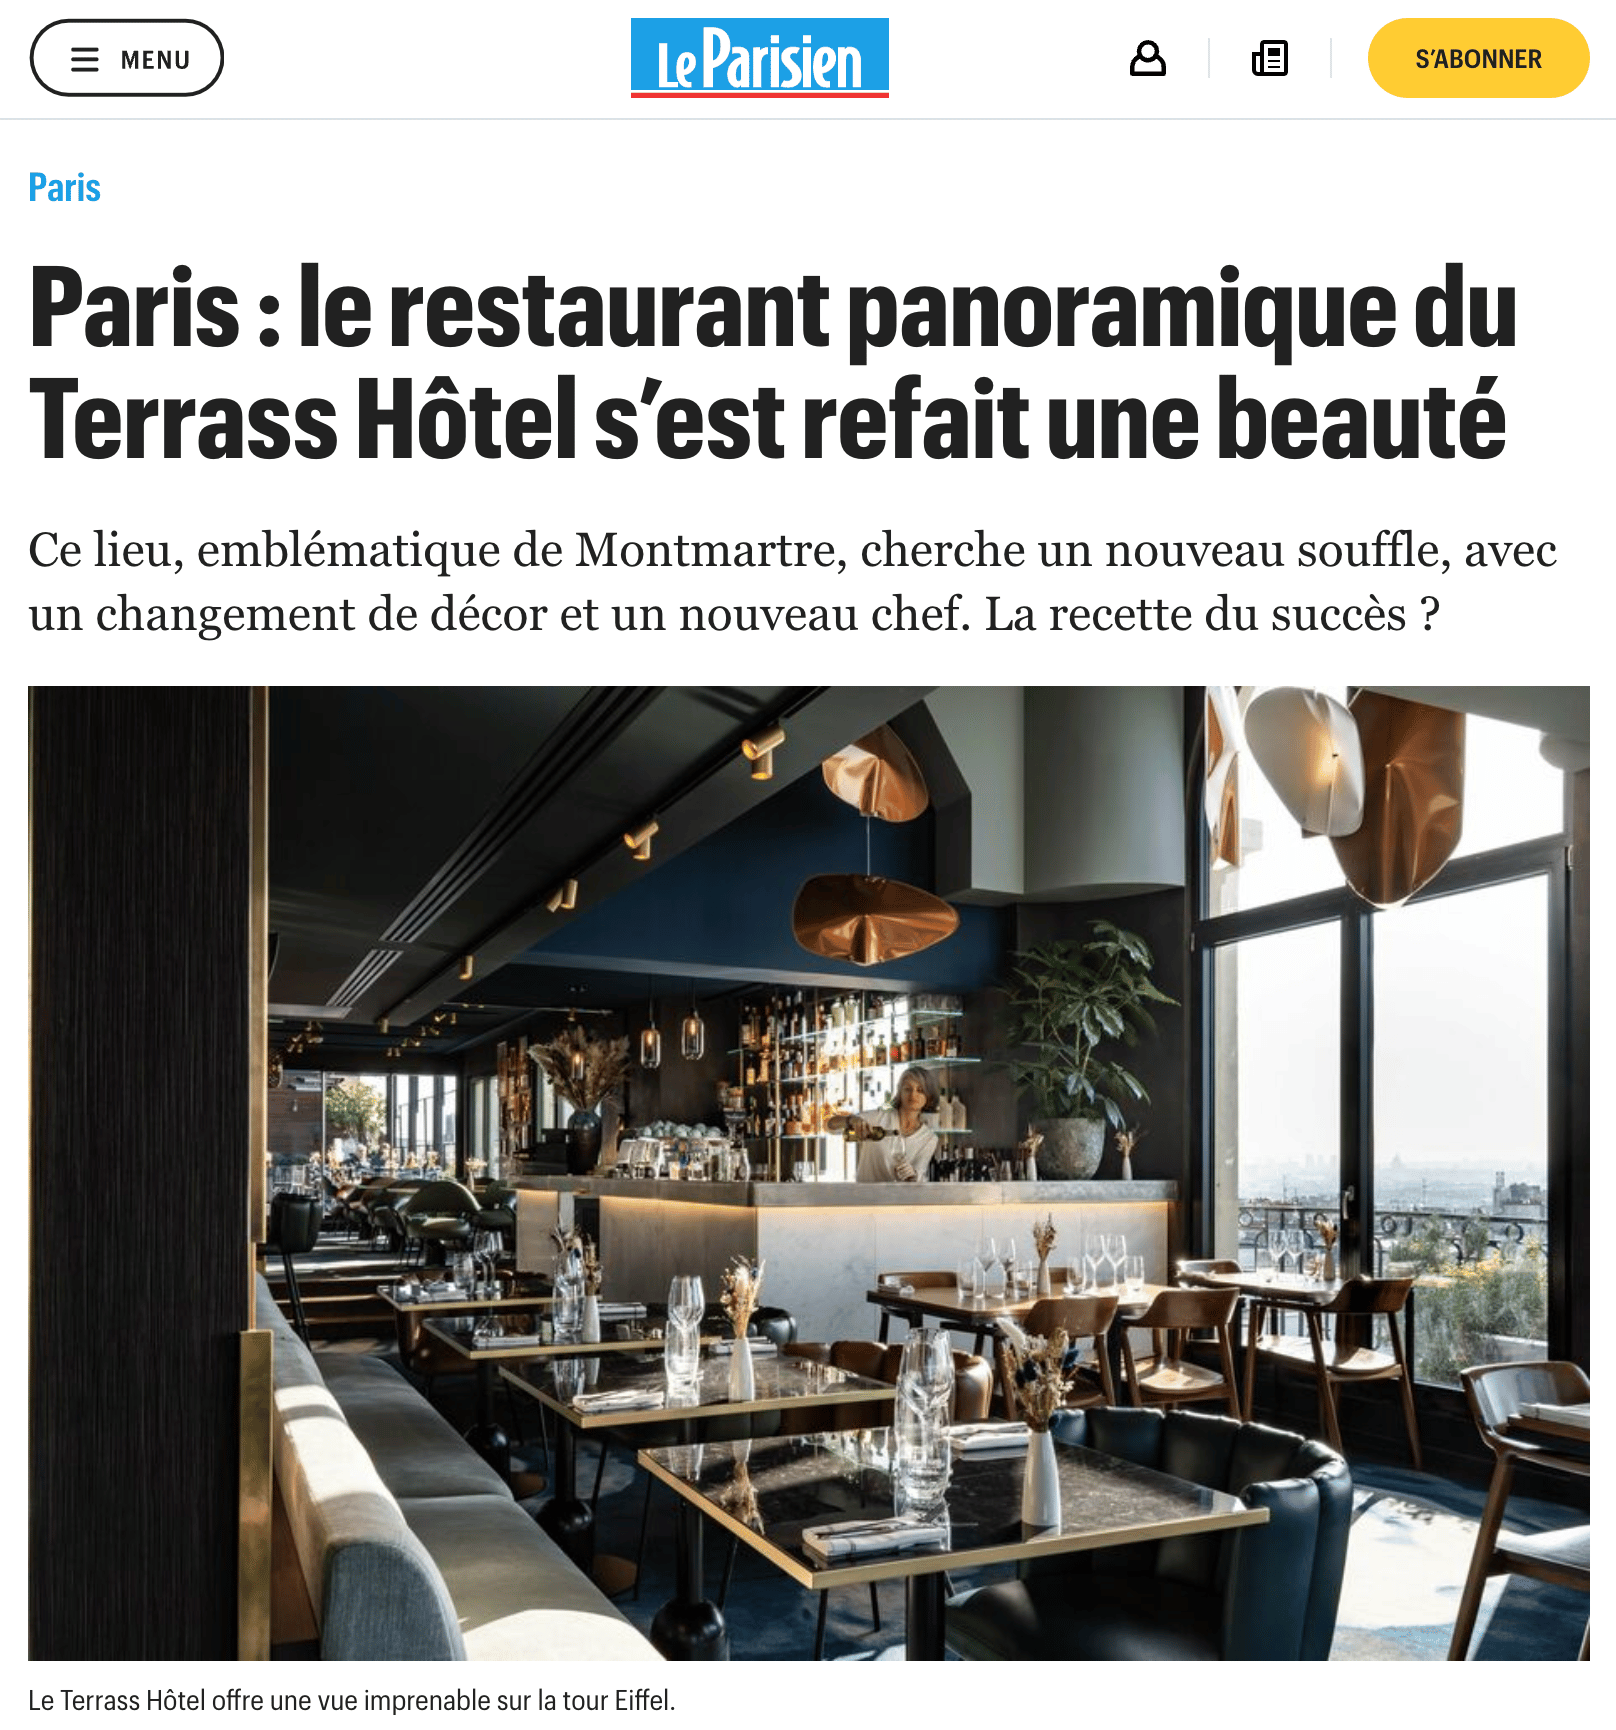 Le Parisien Paris le Terrass Hotel sest refait une beaute